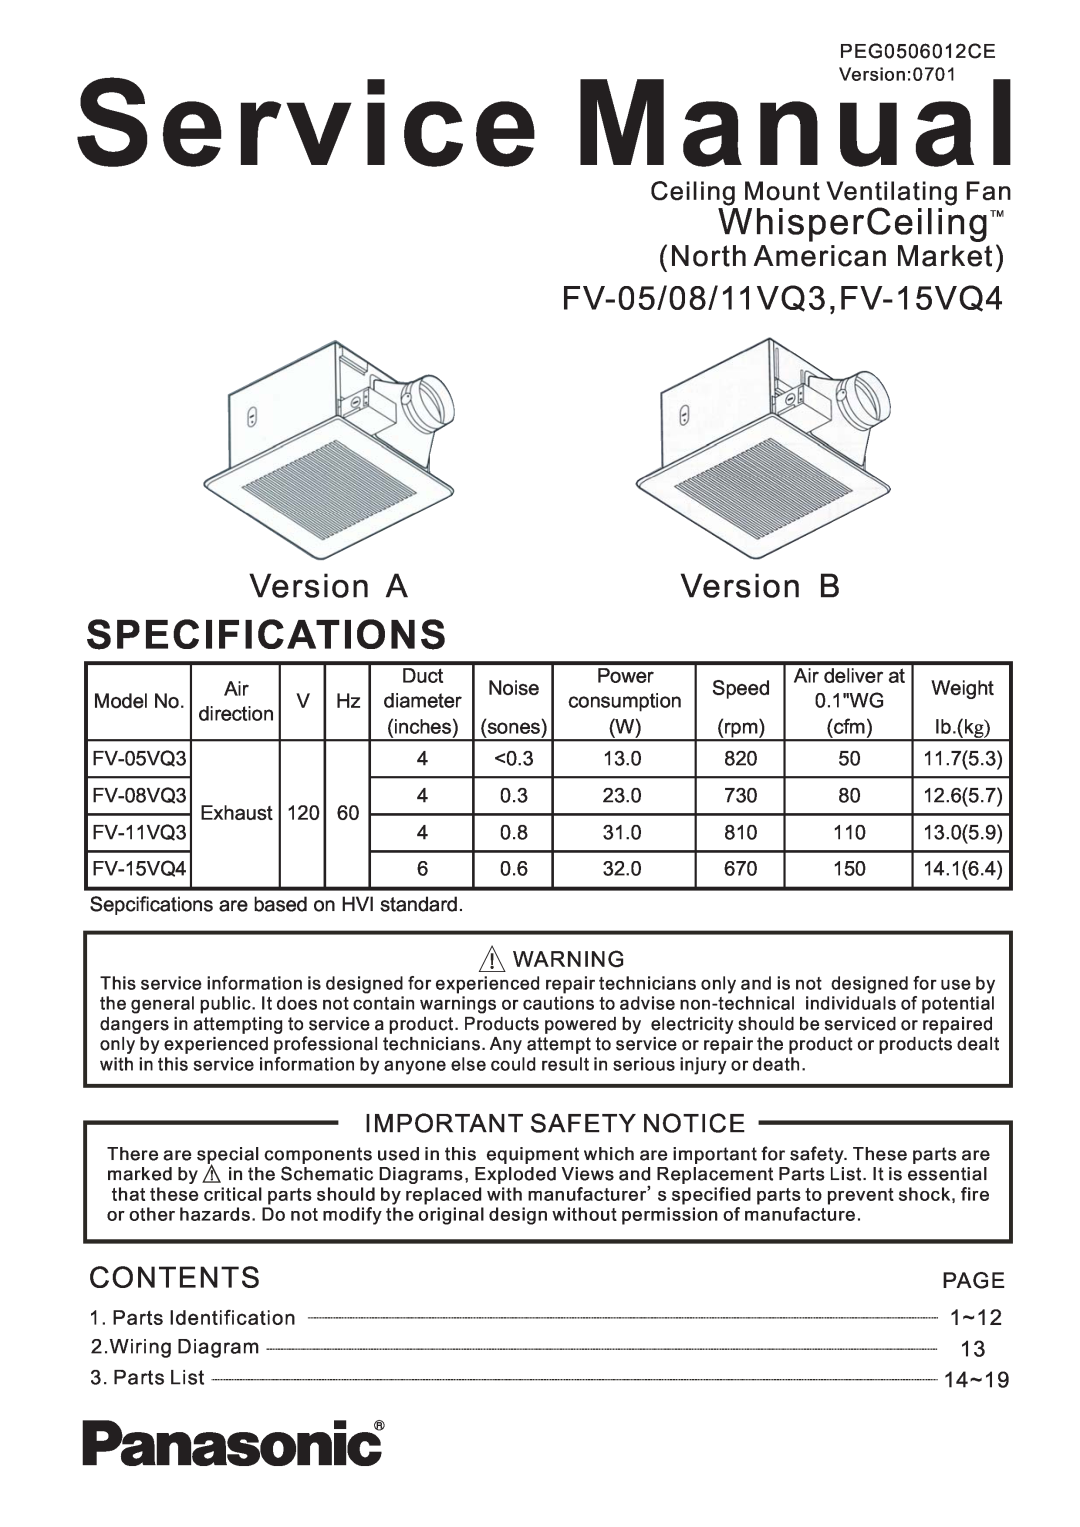 Panasonic FV-11VQ3, FV-08VQ3 service manual FV-05/08/11VQ3,FV-15VQ4 Version AVersion B, North American Market, Contents 